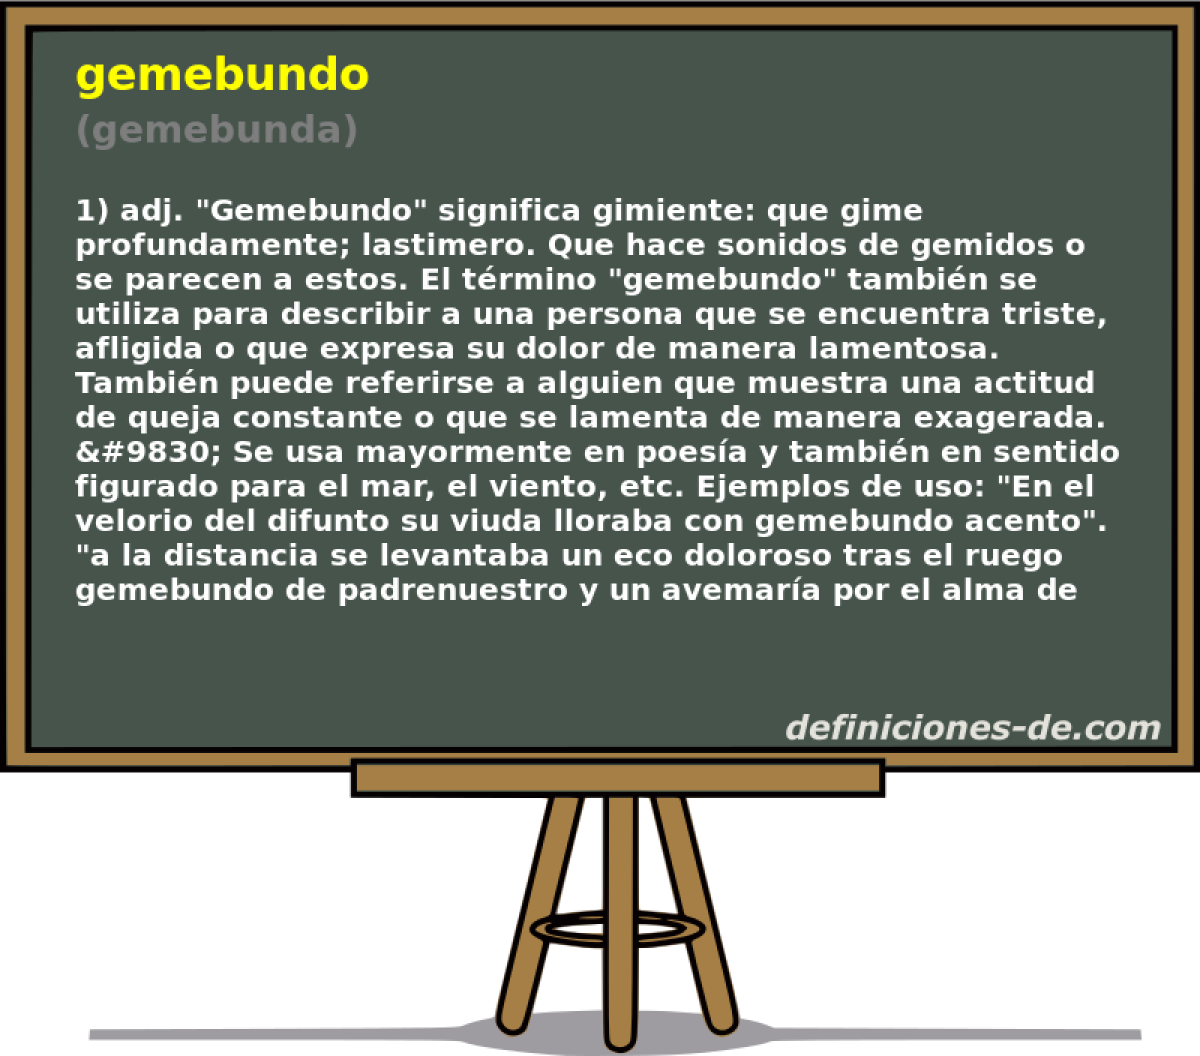 gemebundo (gemebunda)